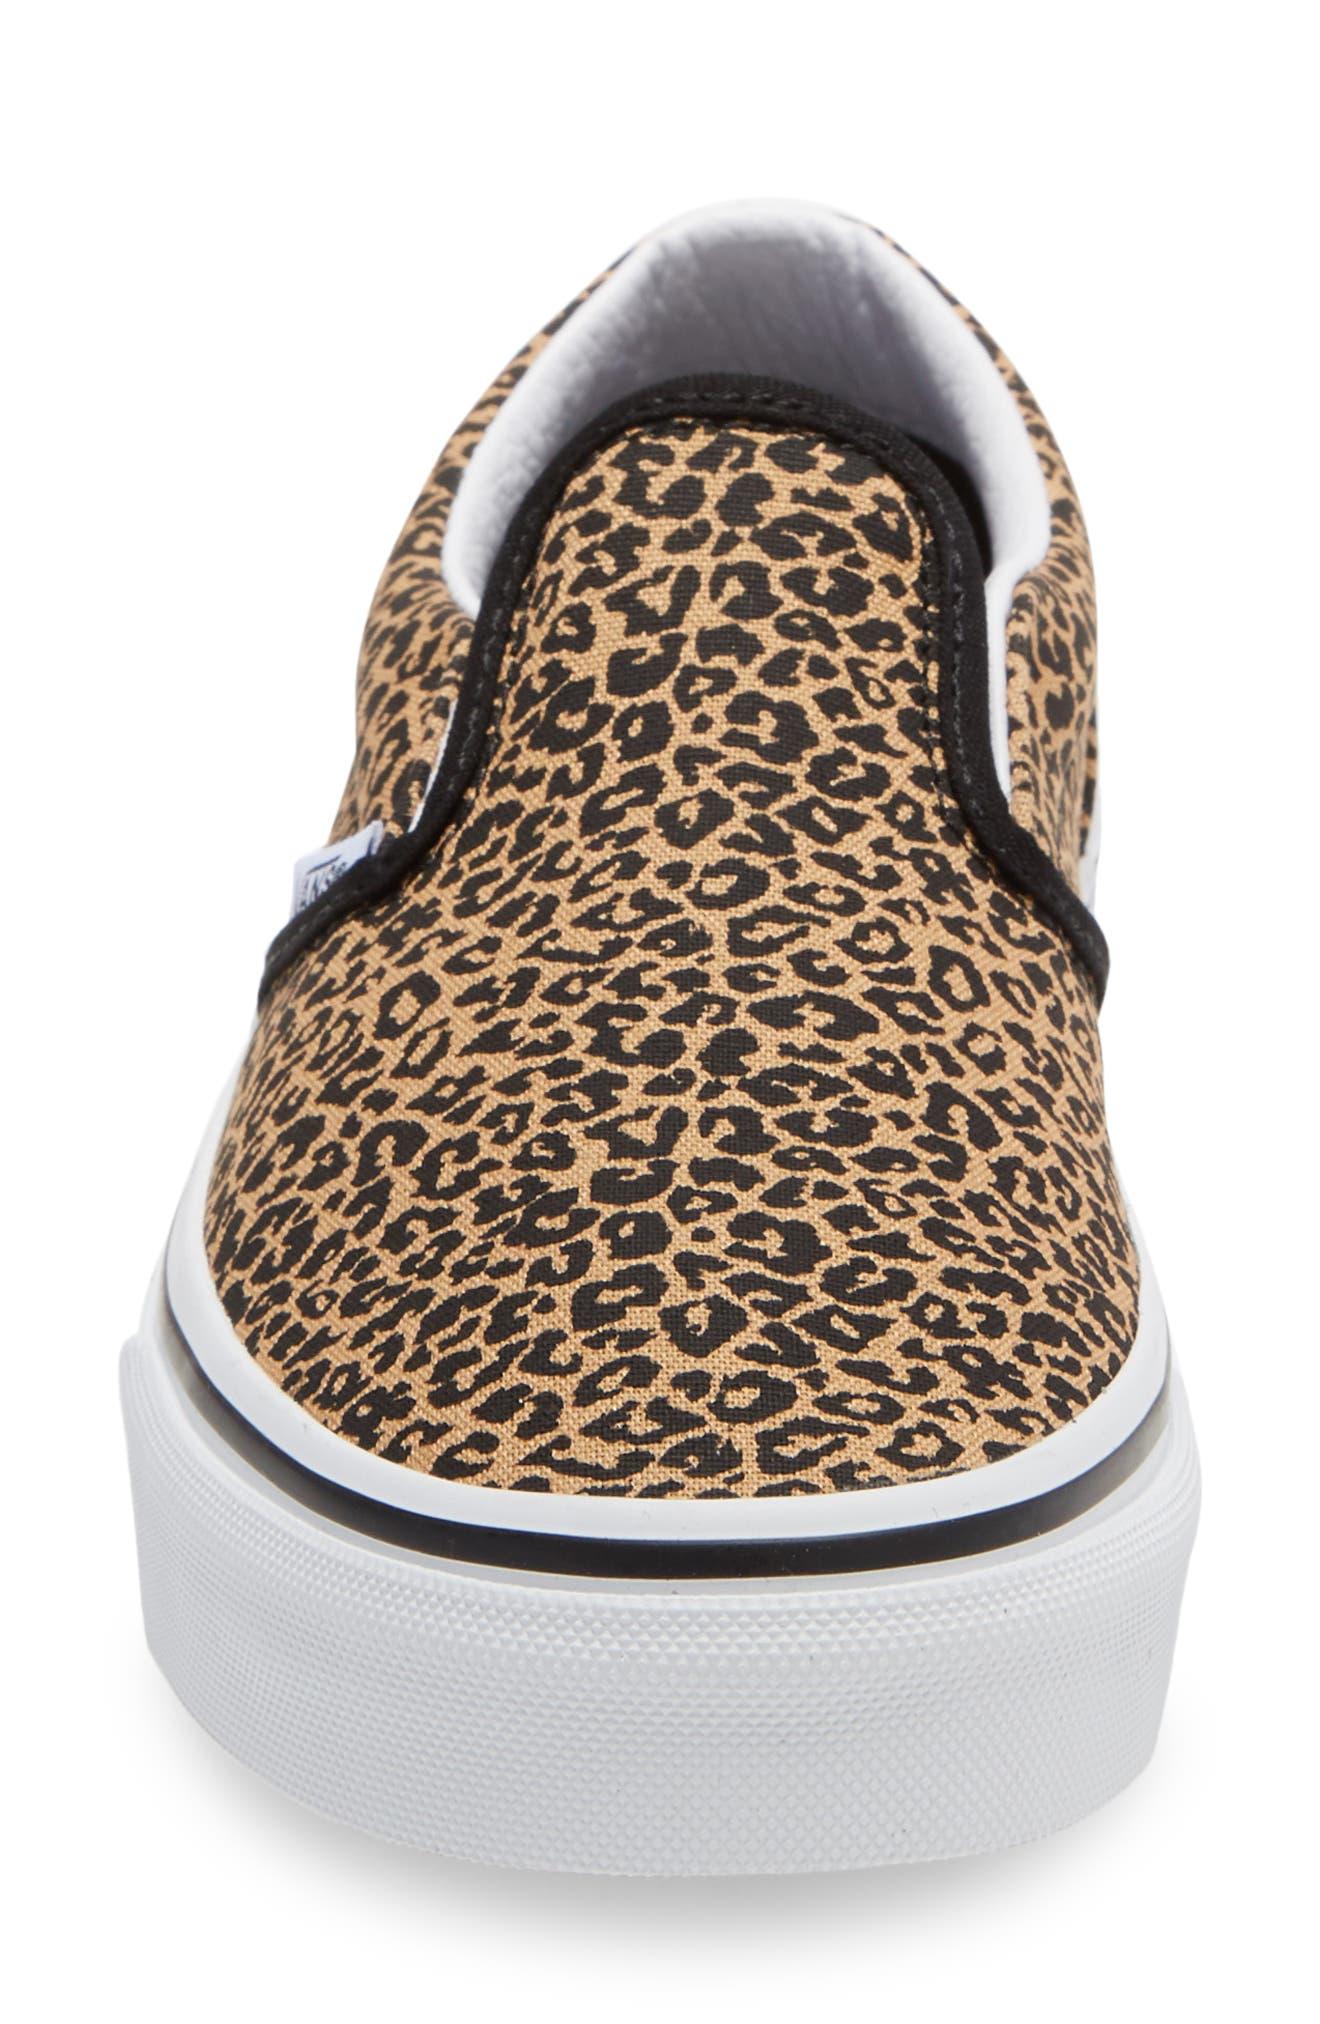 Vans Classic Leopard Spot Slip-on Sneaker in Brown | Lyst